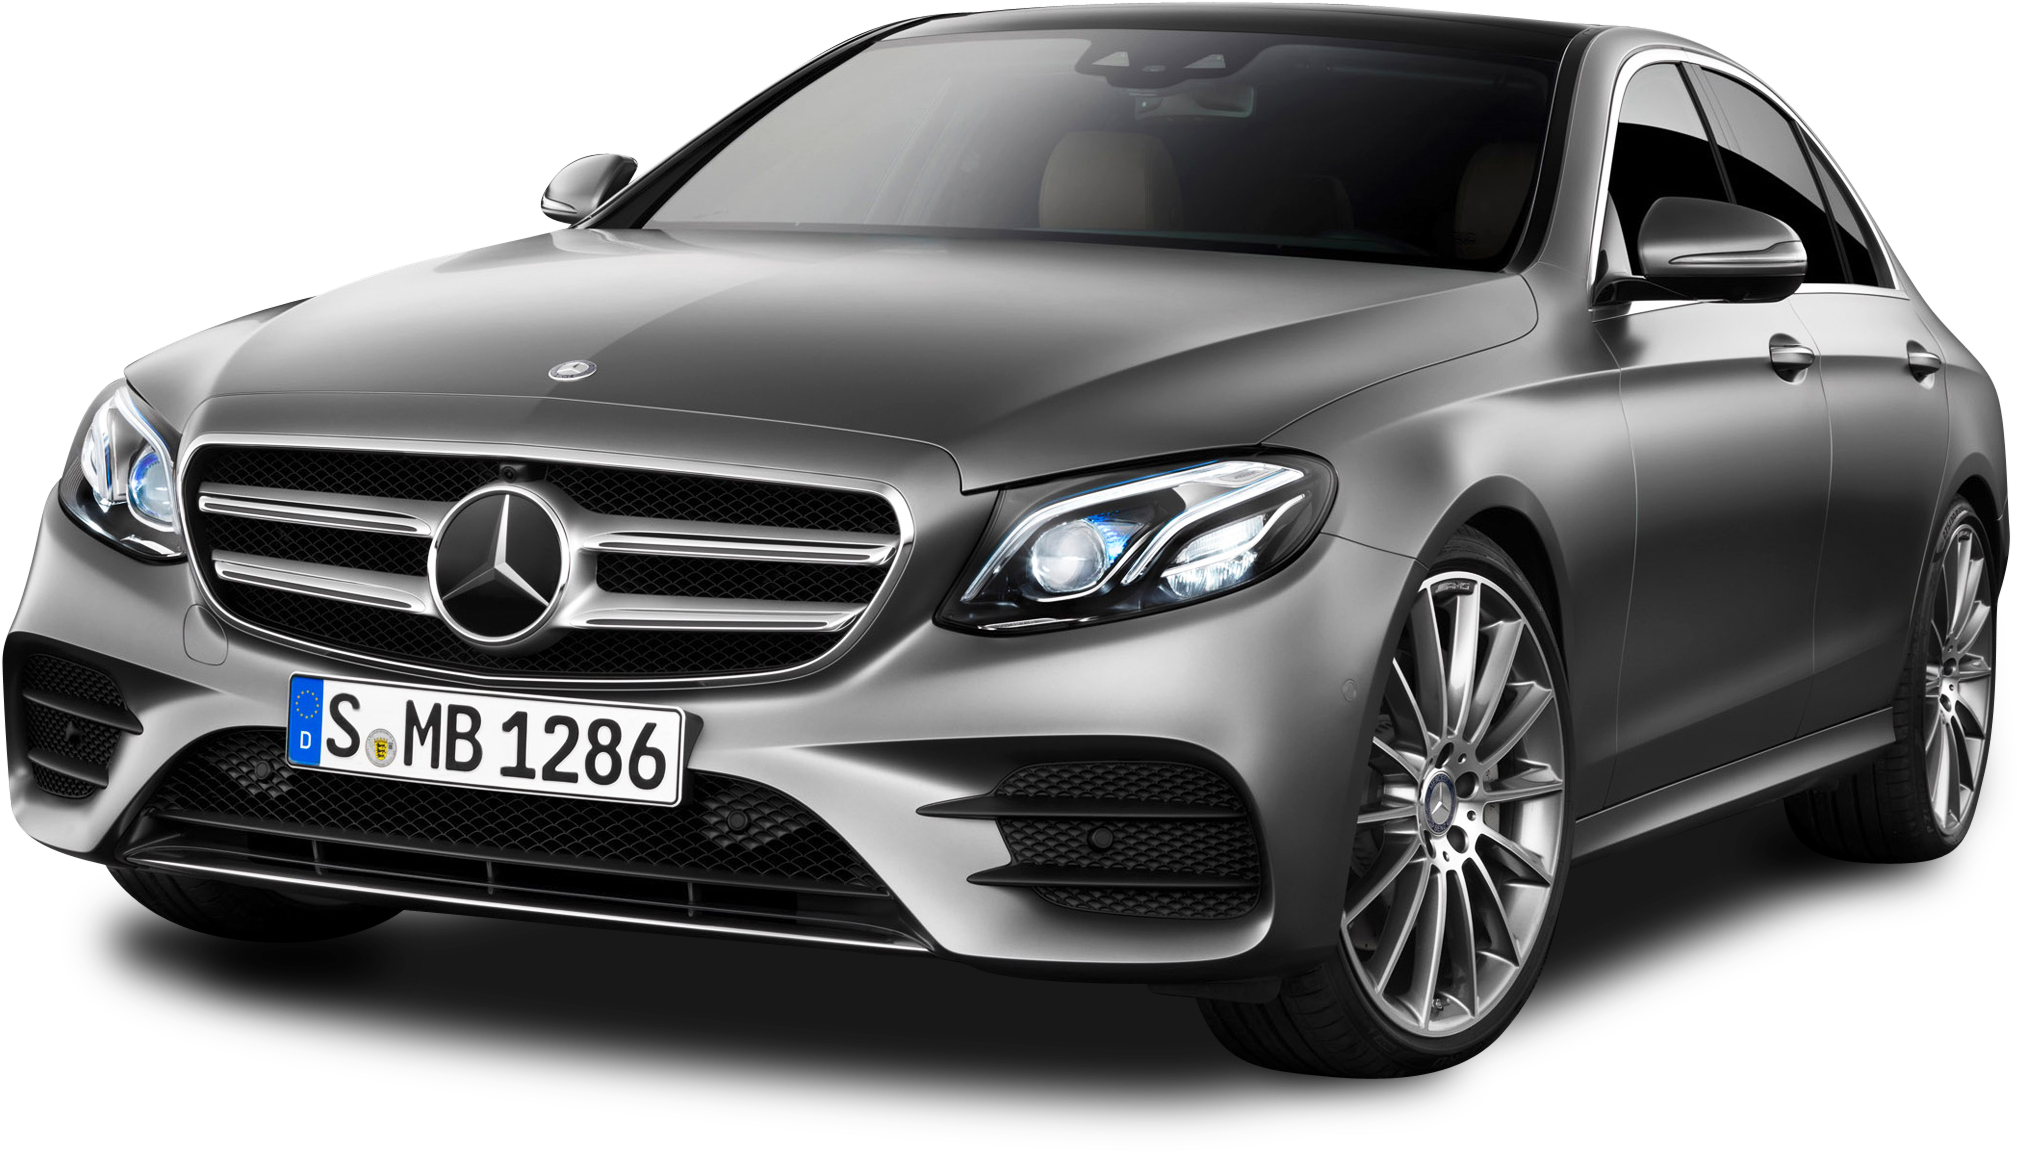 Grey Mercedes Benz E Class Car - Mercedes Benz Car Png Clipart (2196x1302), Png Download